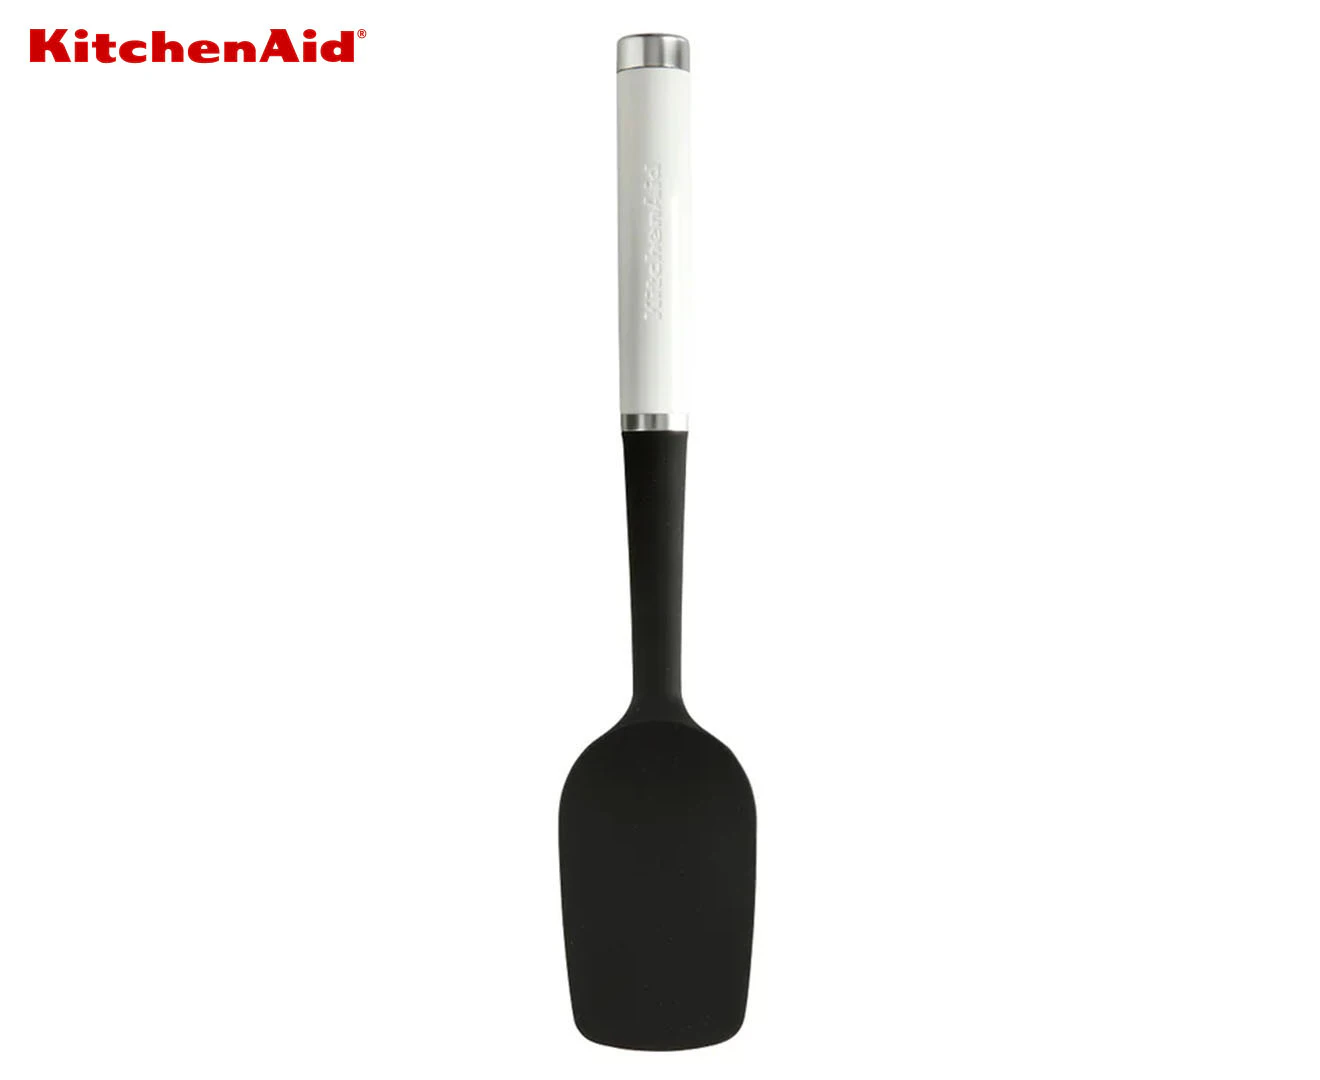 KitchenAid Silicone Spatula Classic Black 22 cm